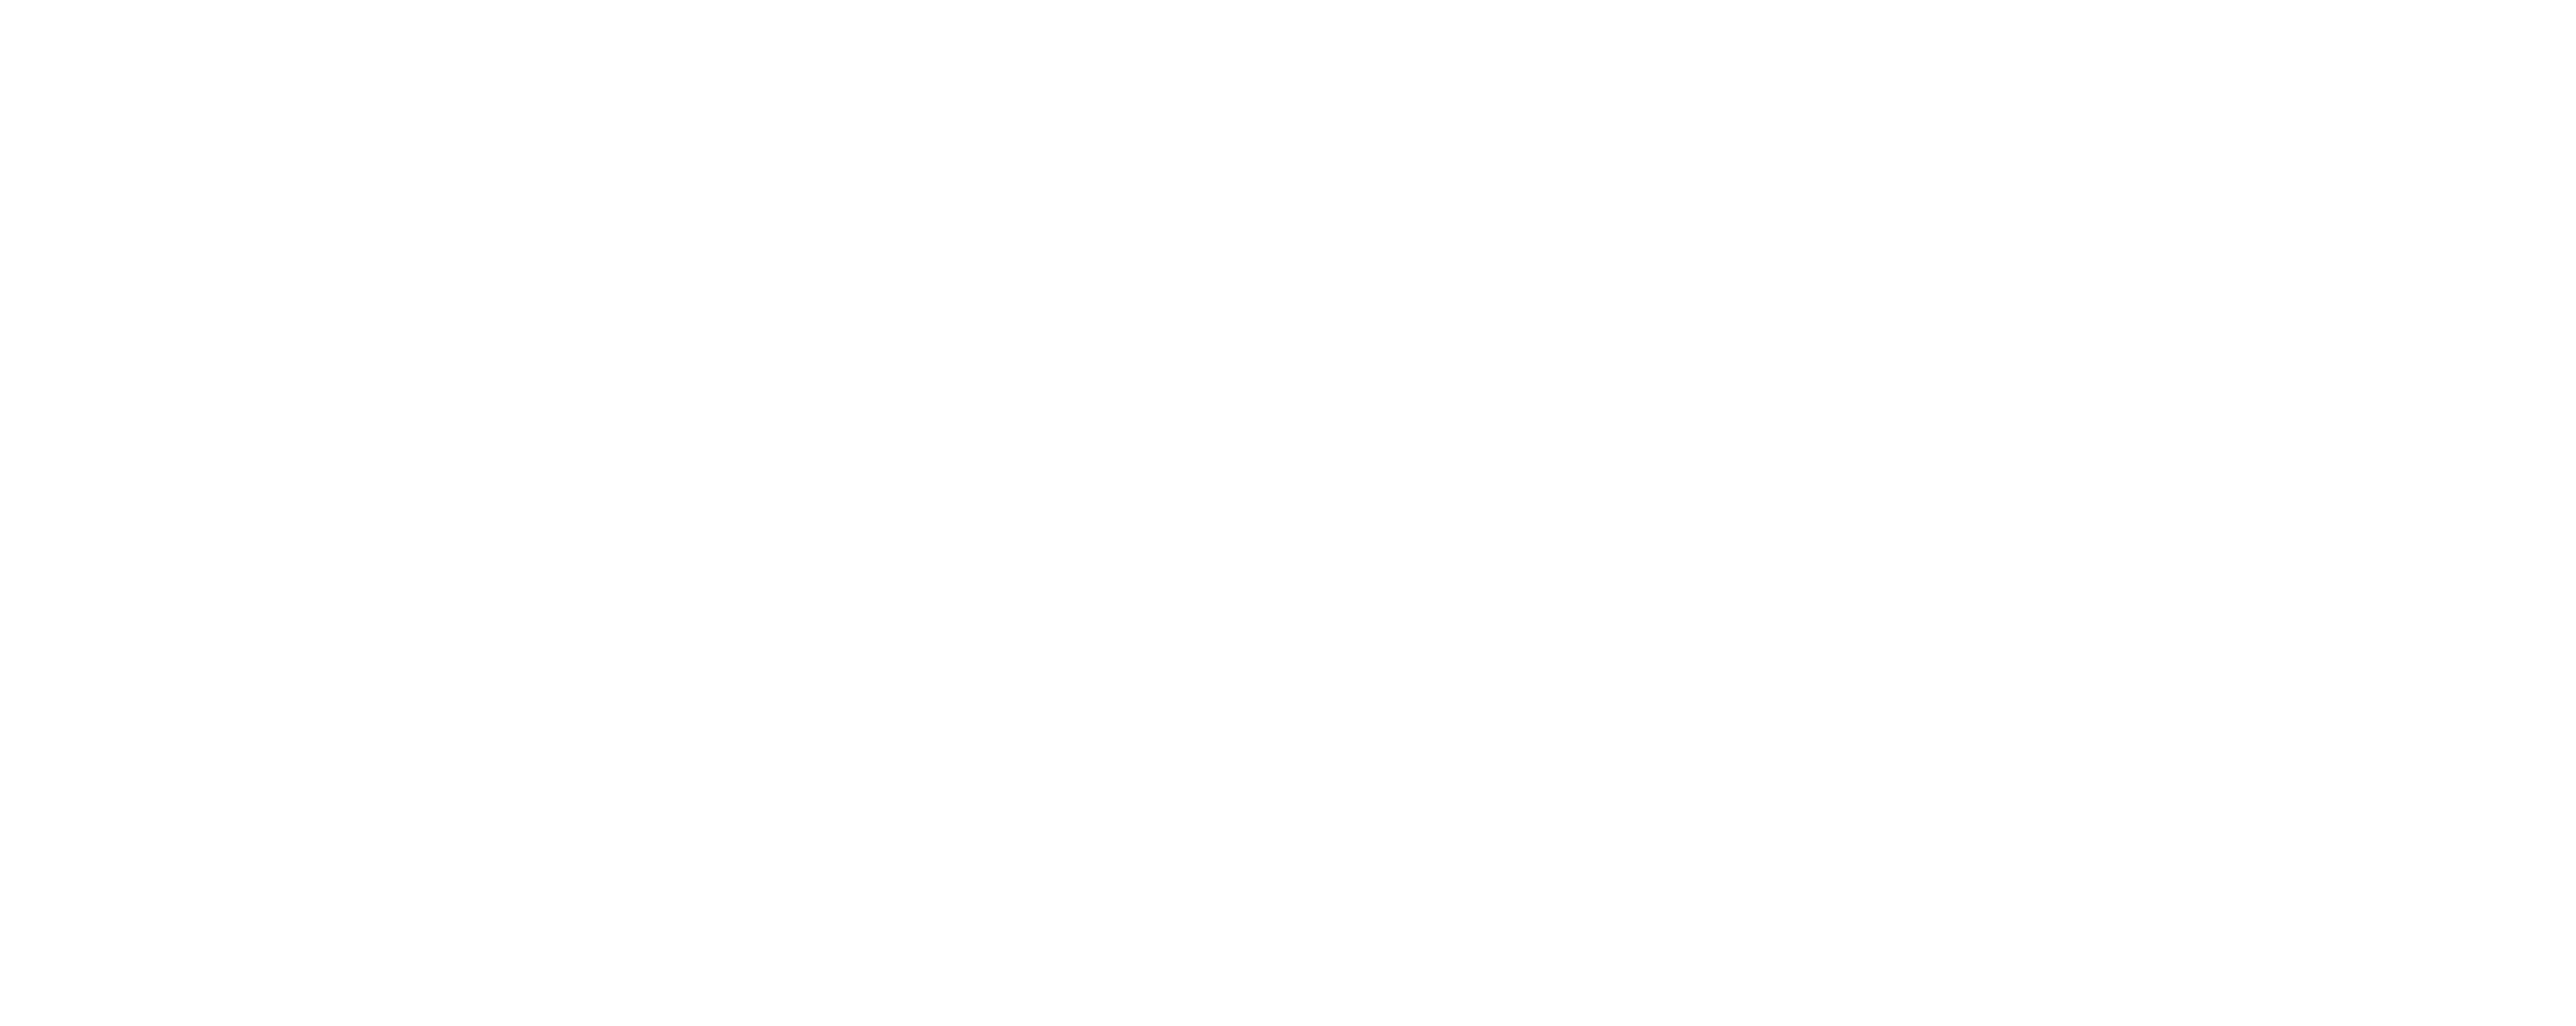 Leuven-logo-white